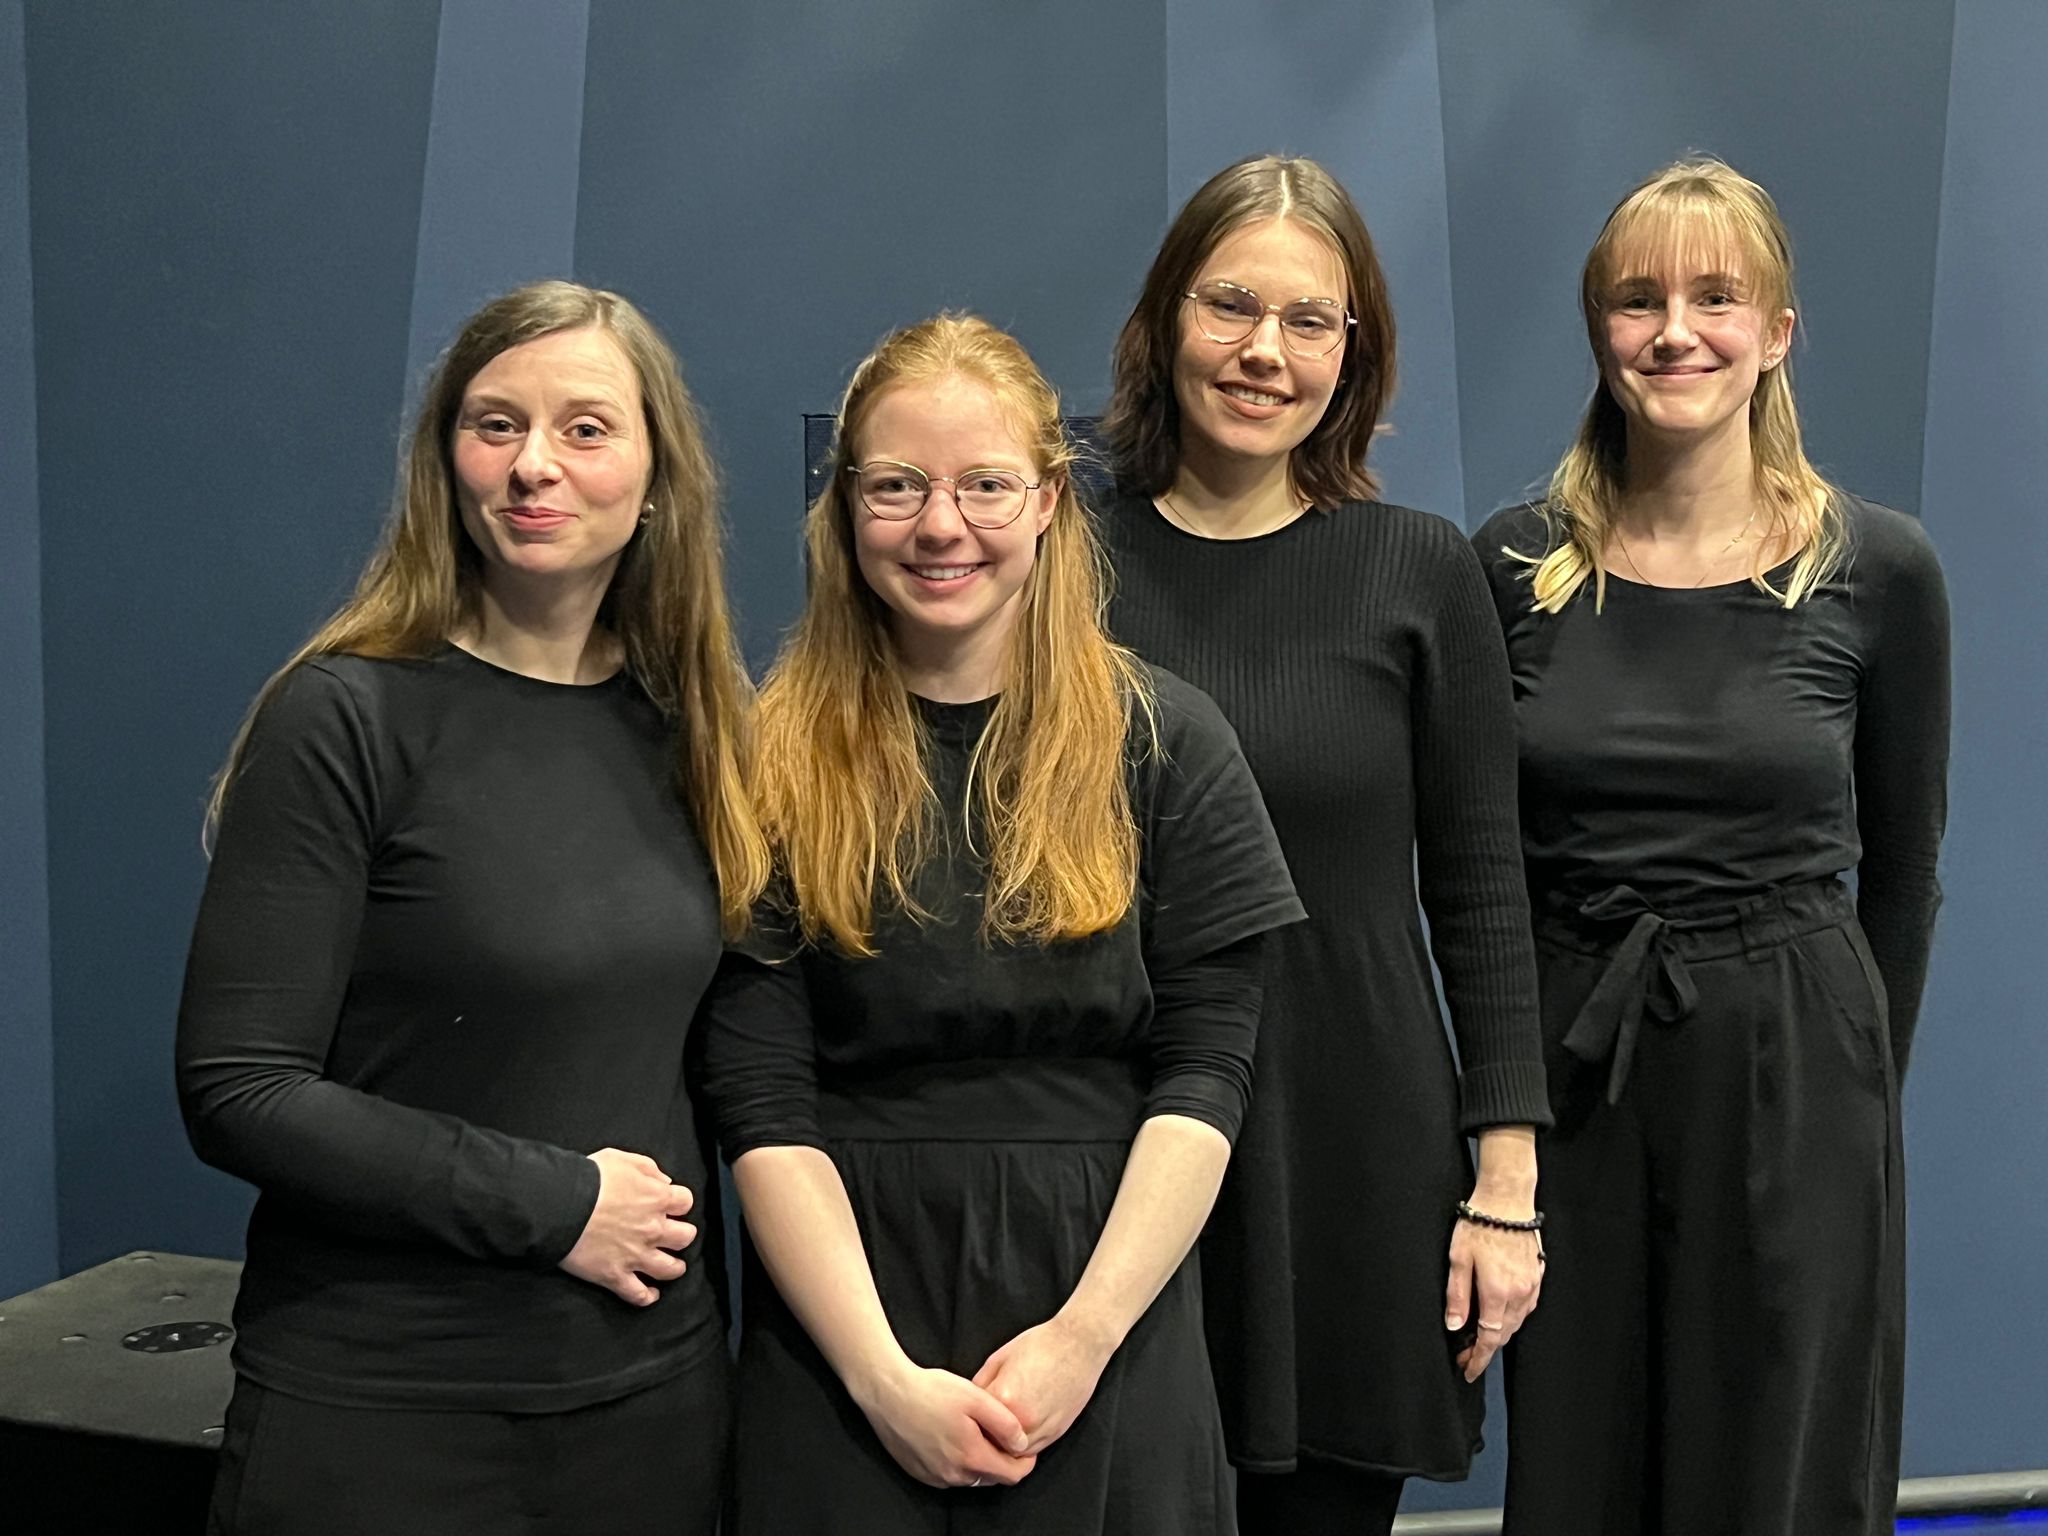 Vier Frauen in schwarzer Kleidung, die nebeneinander stehen und freundlich nach vorn schauen